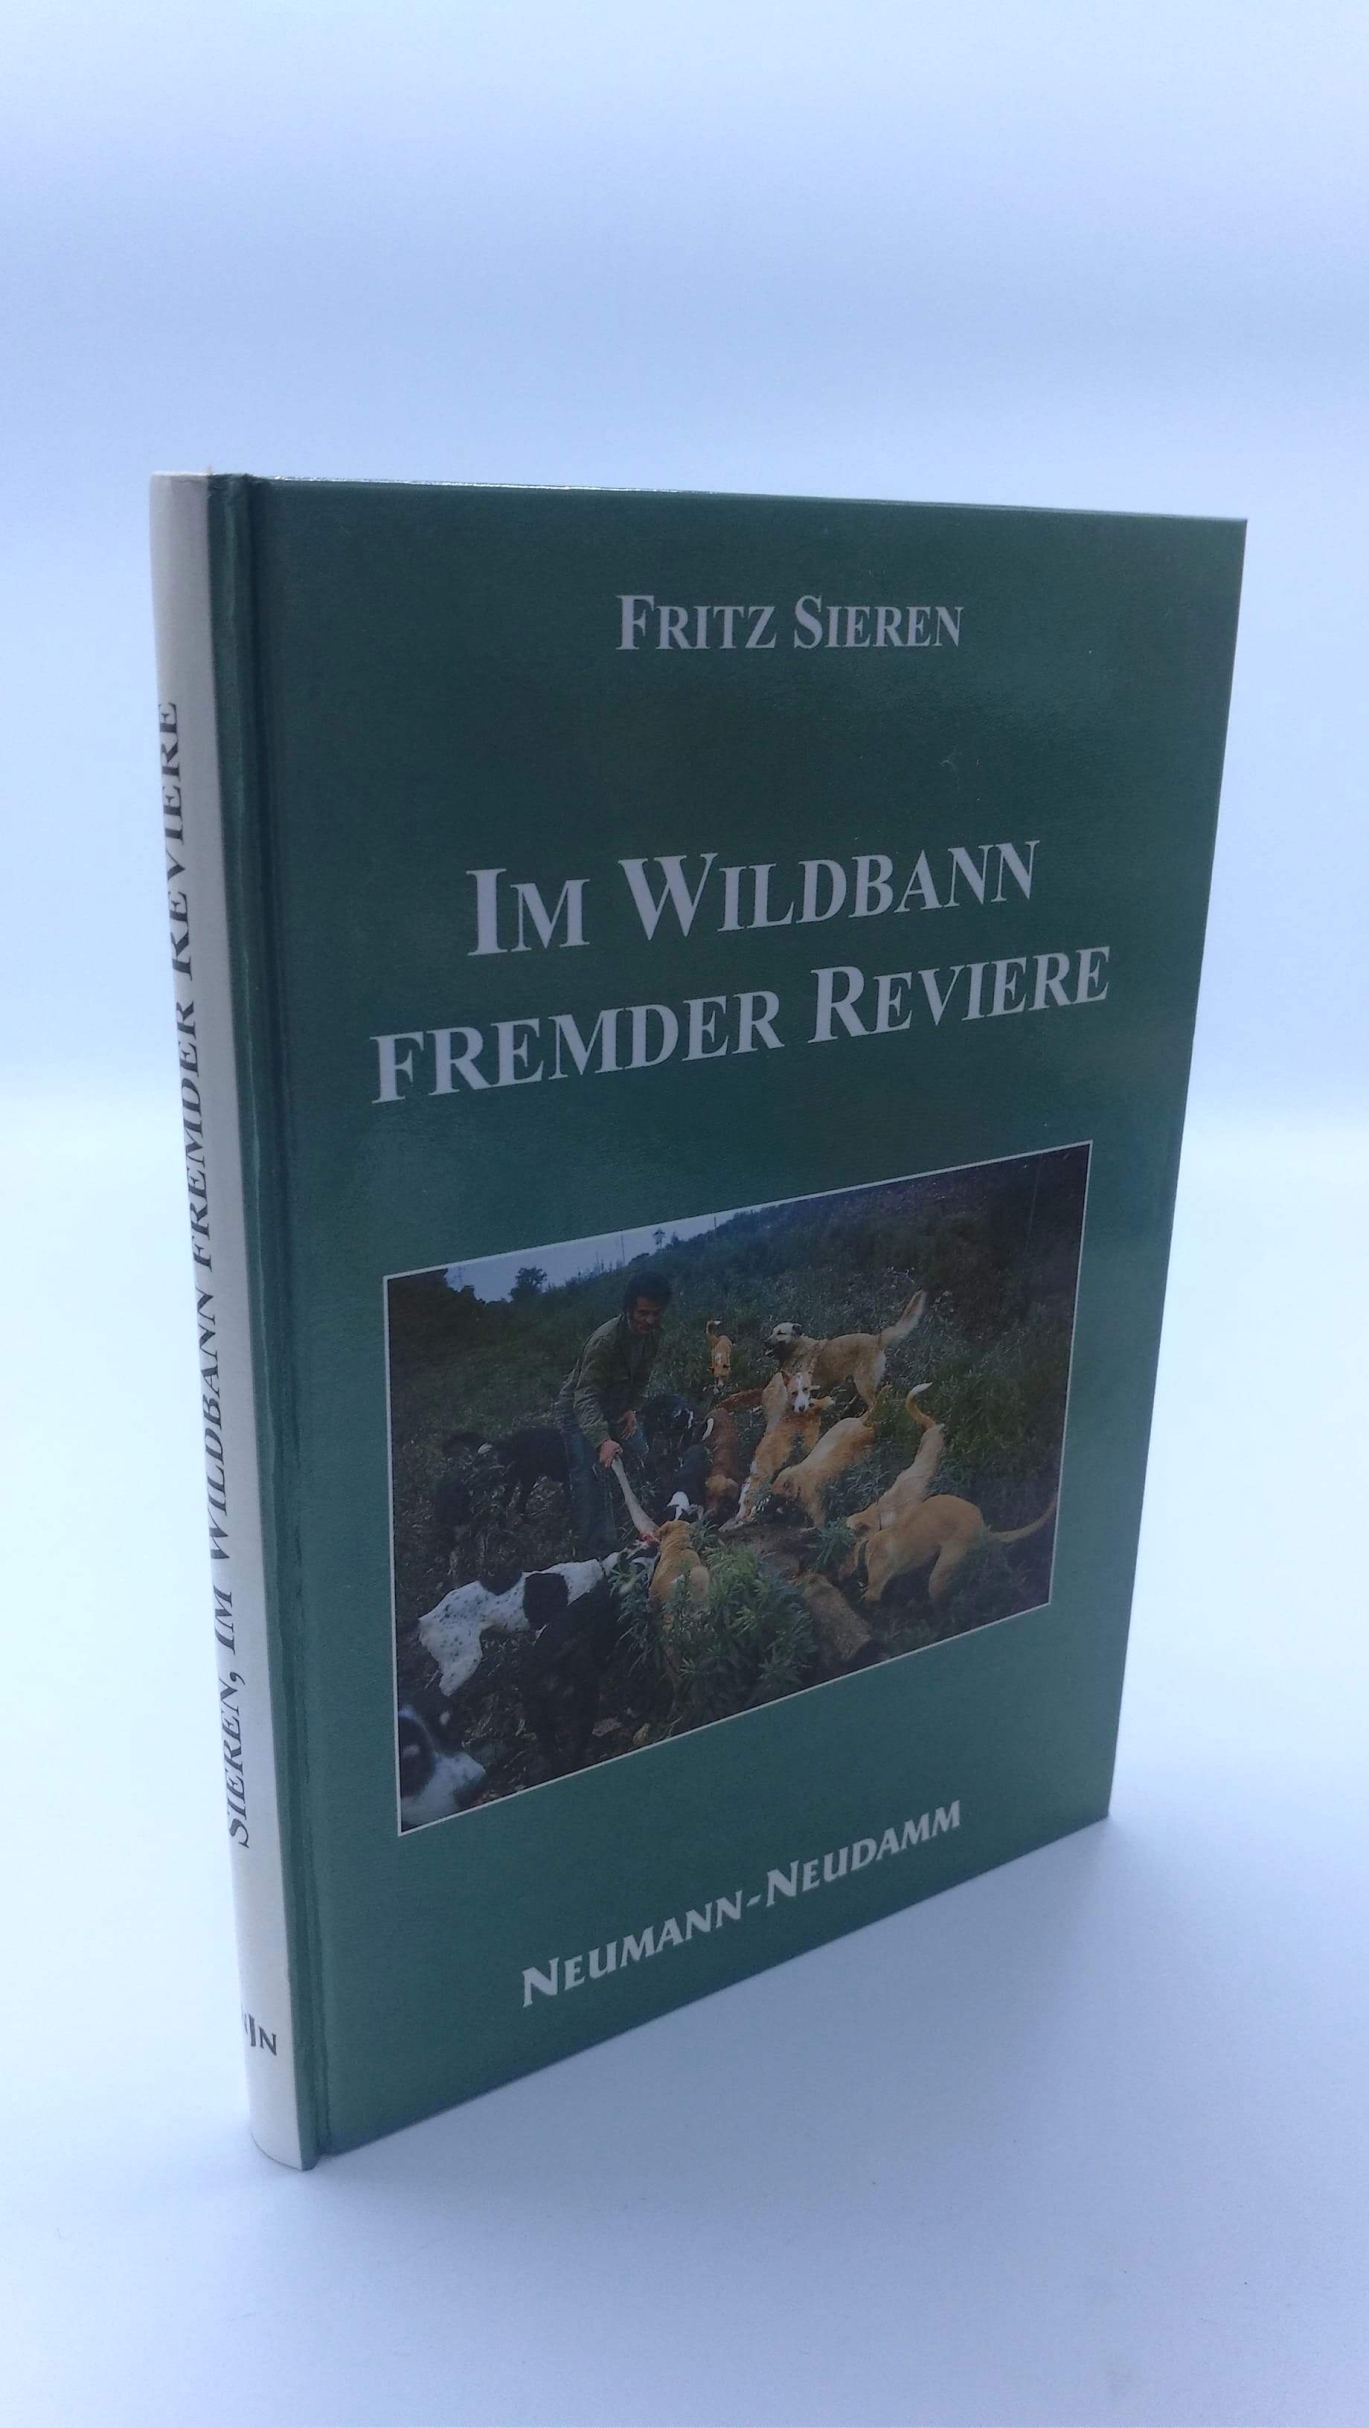 Sieren, Fritz: Im Wildbann fremder Reviere